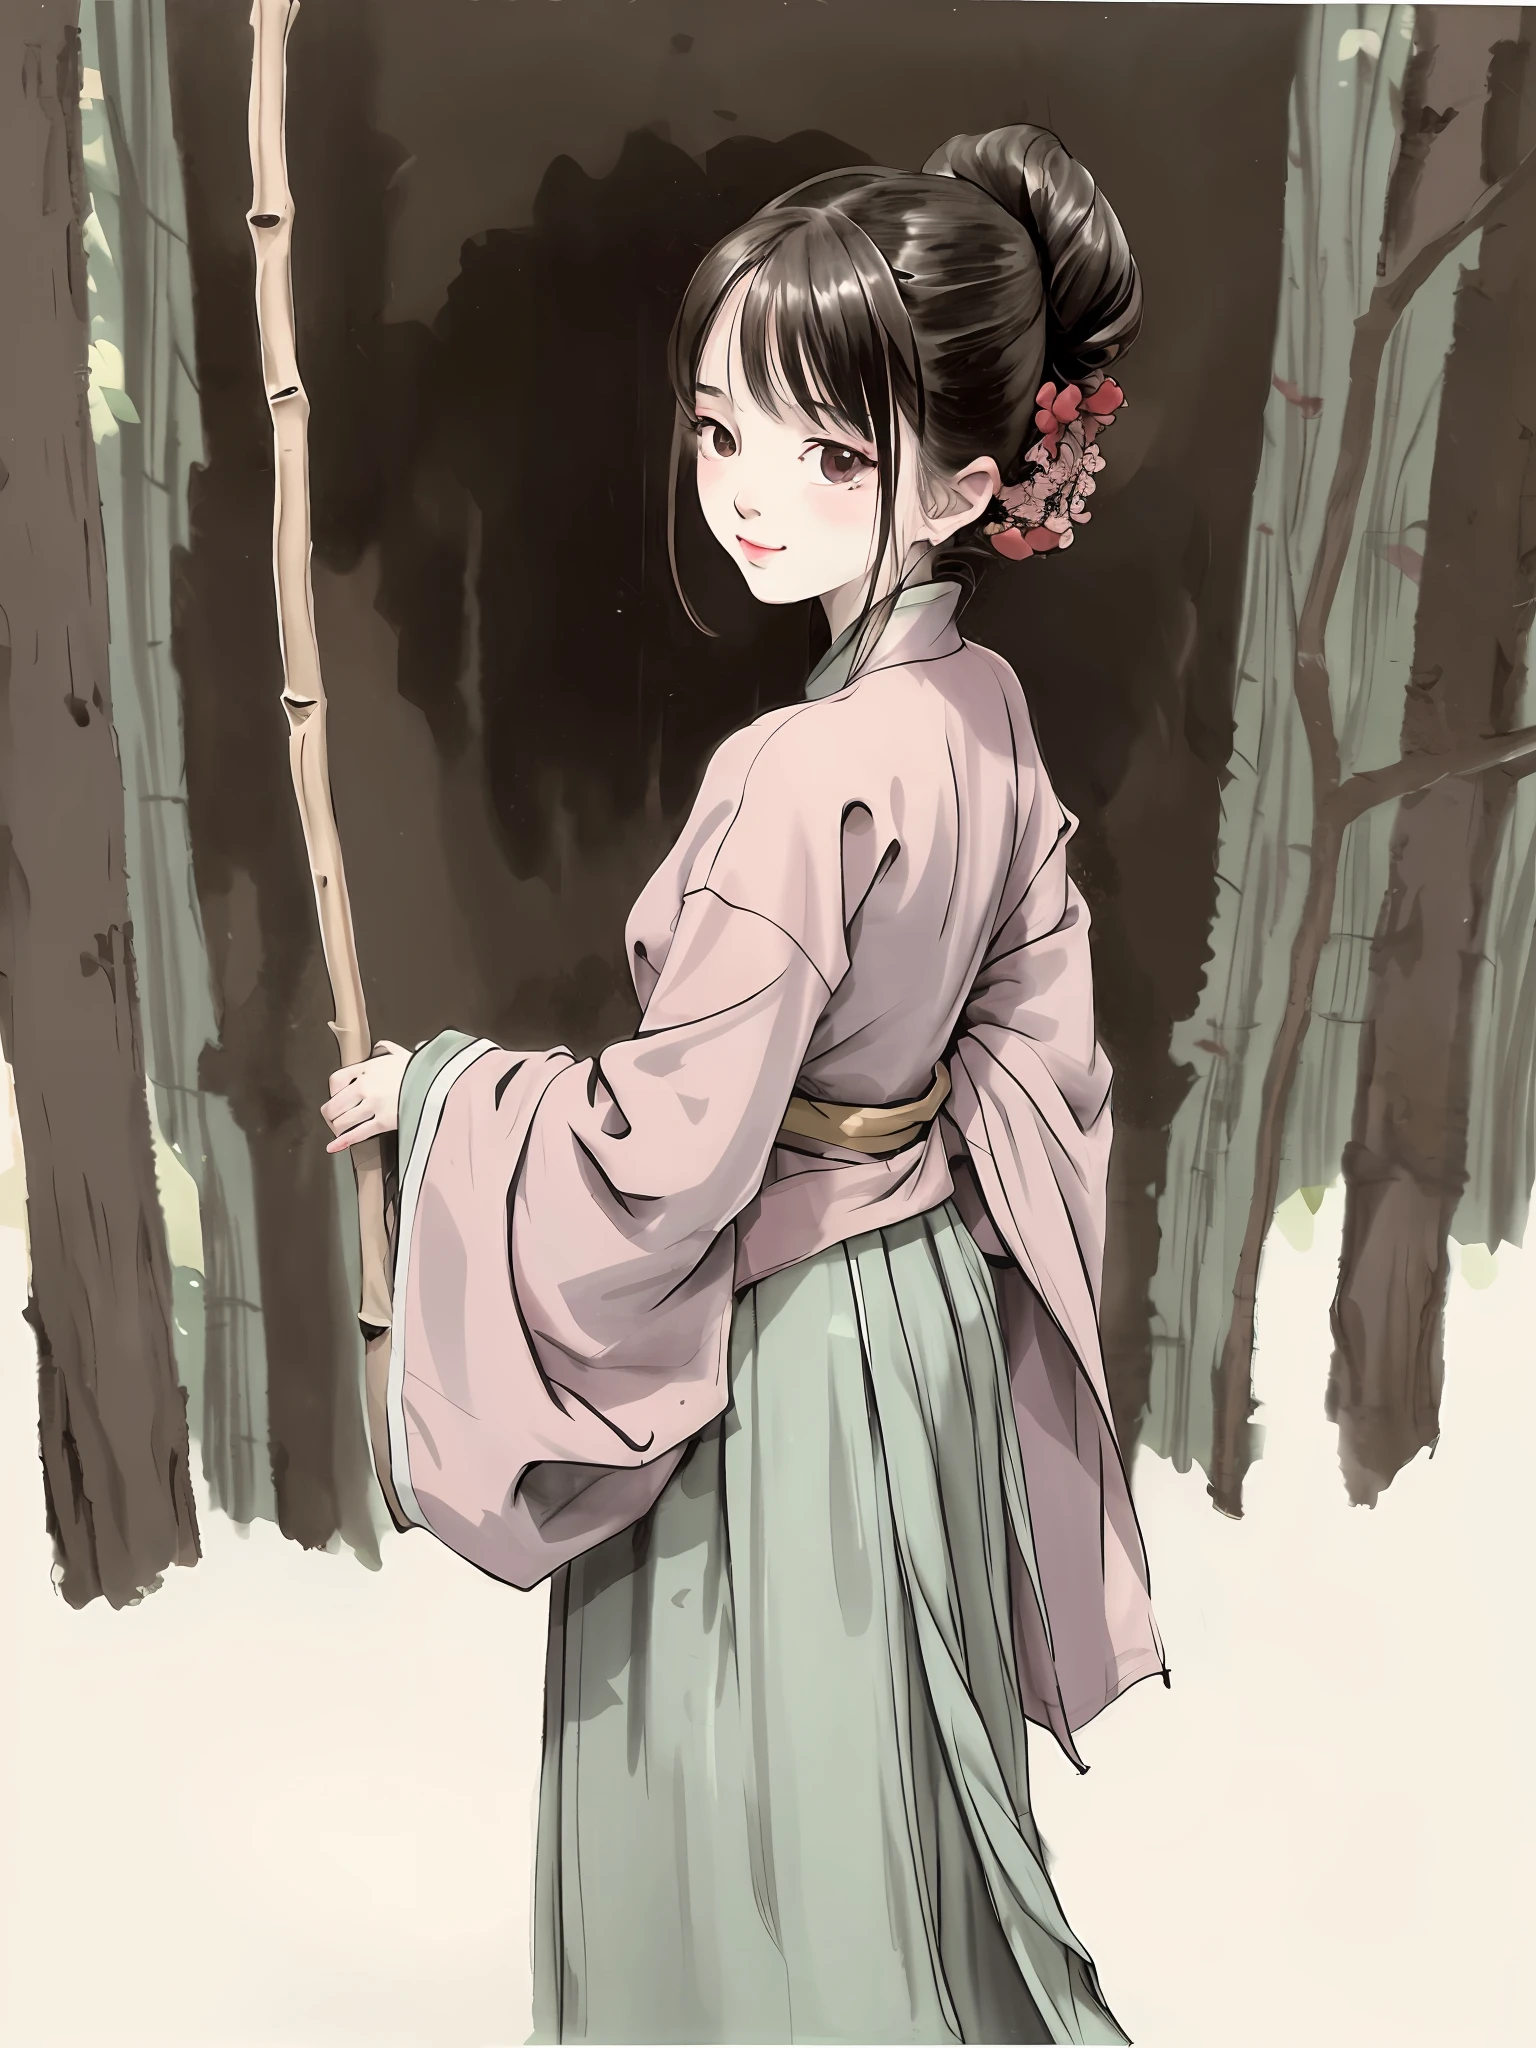 (Obra maestra, mejor calidad: 1.2), pintura tradicional china en tinta, 1 mujer, De pie, mirando hacia atrás, hanfu, rama de sauce, (sonriente), mirando al espectador,